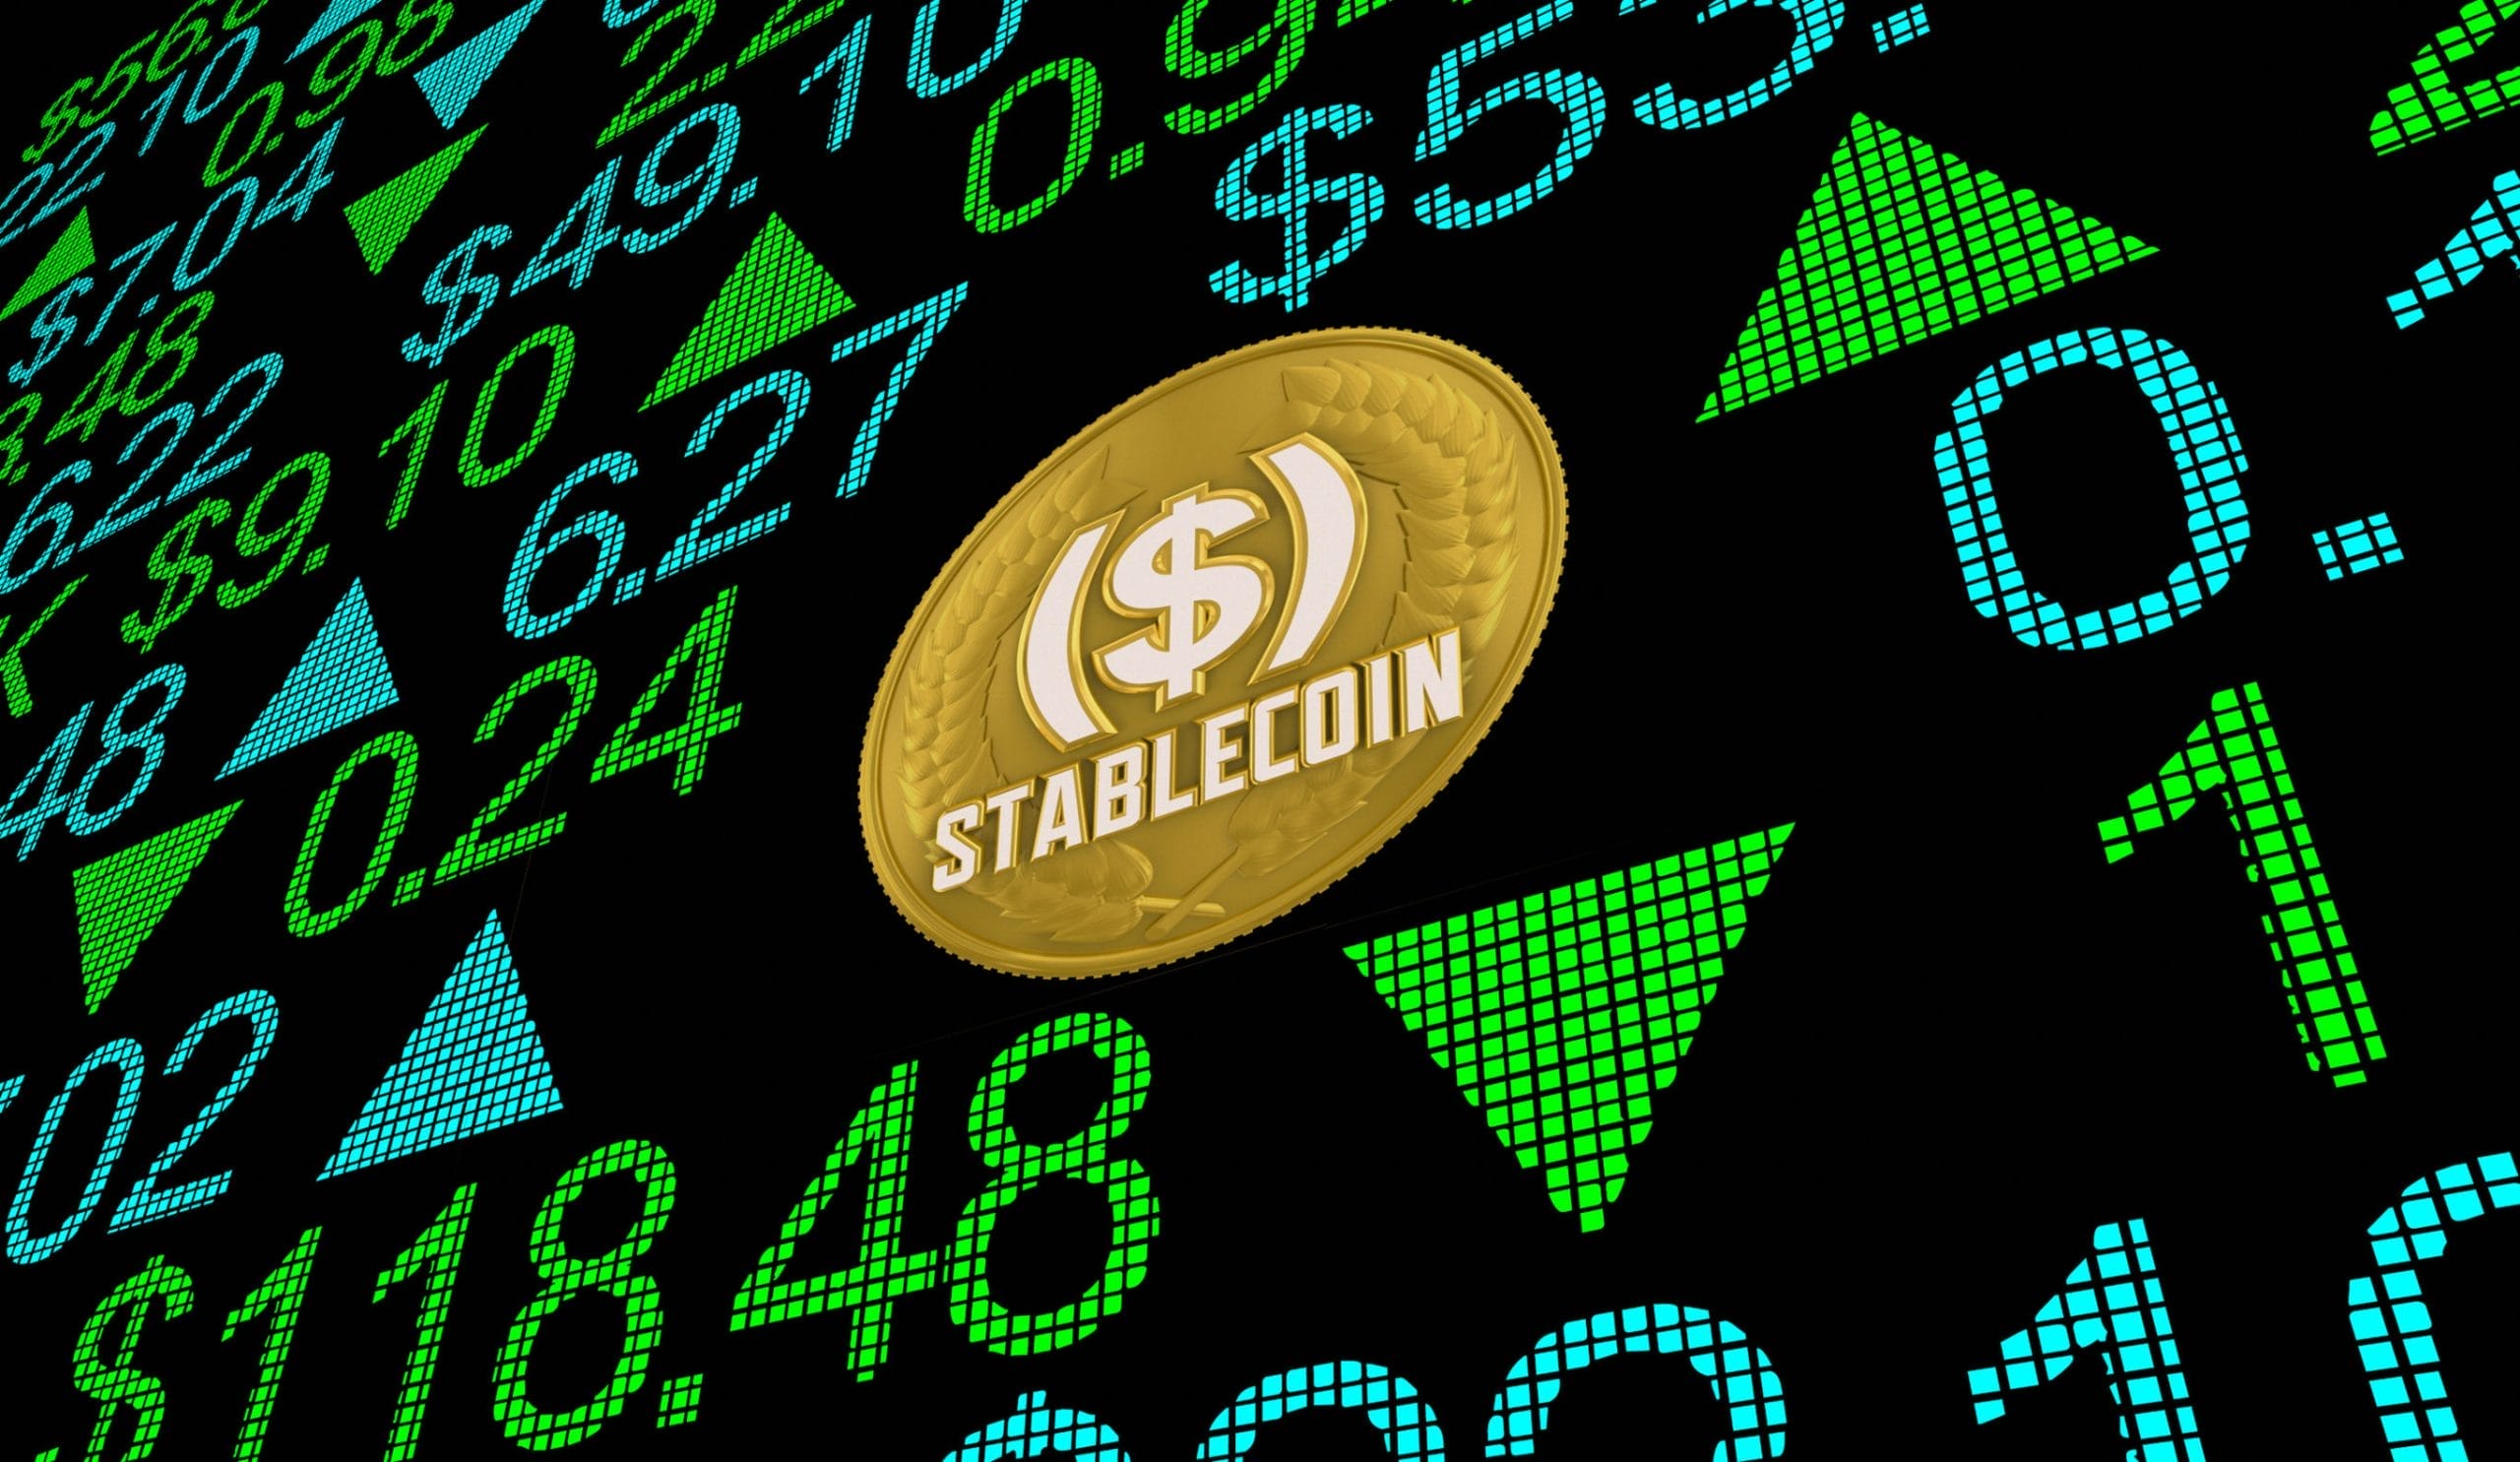 มูลค่าตลาดของ Stablecoin มีมูลค่าถึง 138 พันล้านดอลลาร์ โดยปริมาณการเติบโต 4.5% ในเดือนนี้